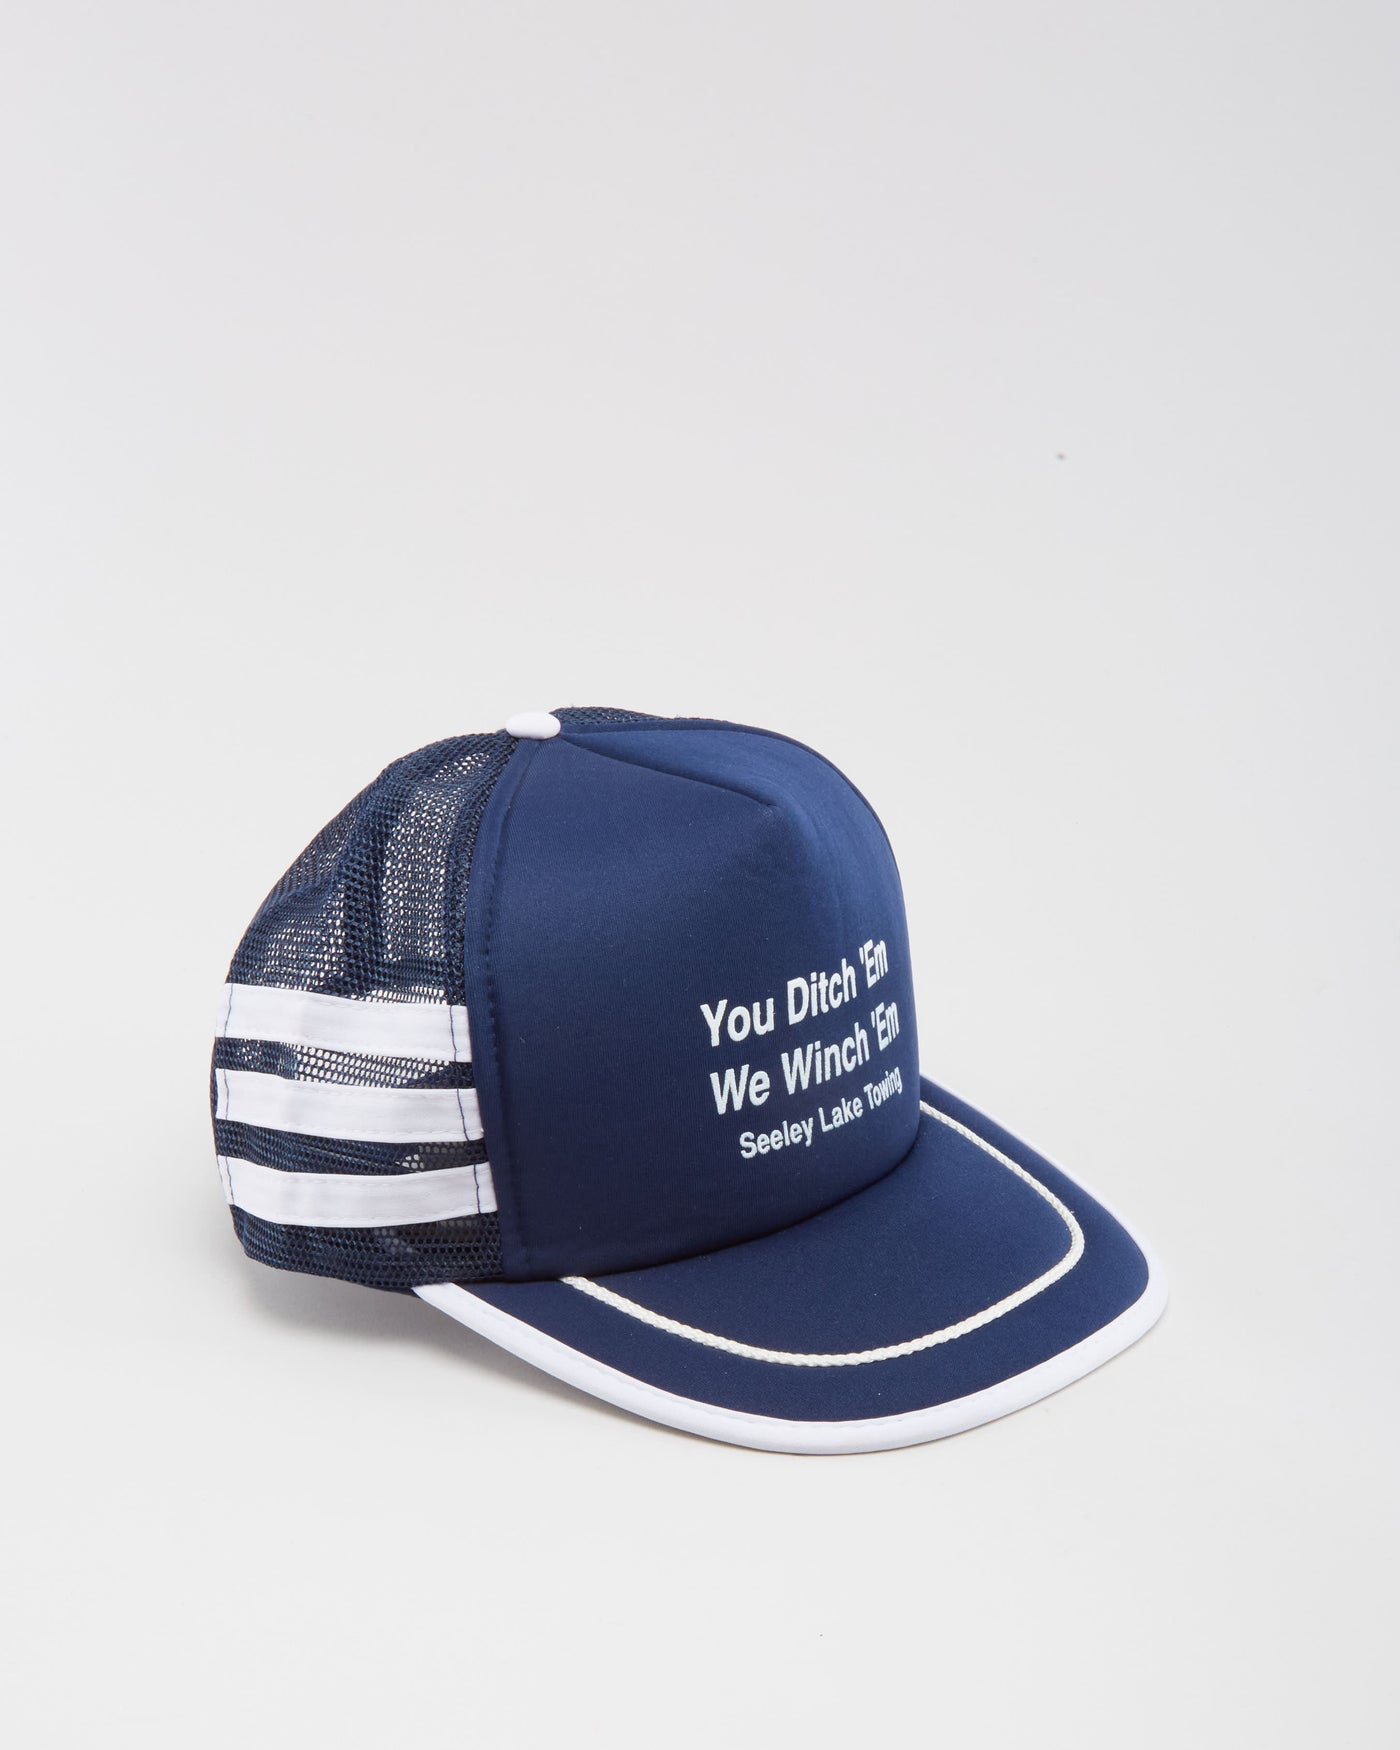 Vintage 90s You Ditch 'Em We Winch 'Em Navy Trucker Hat